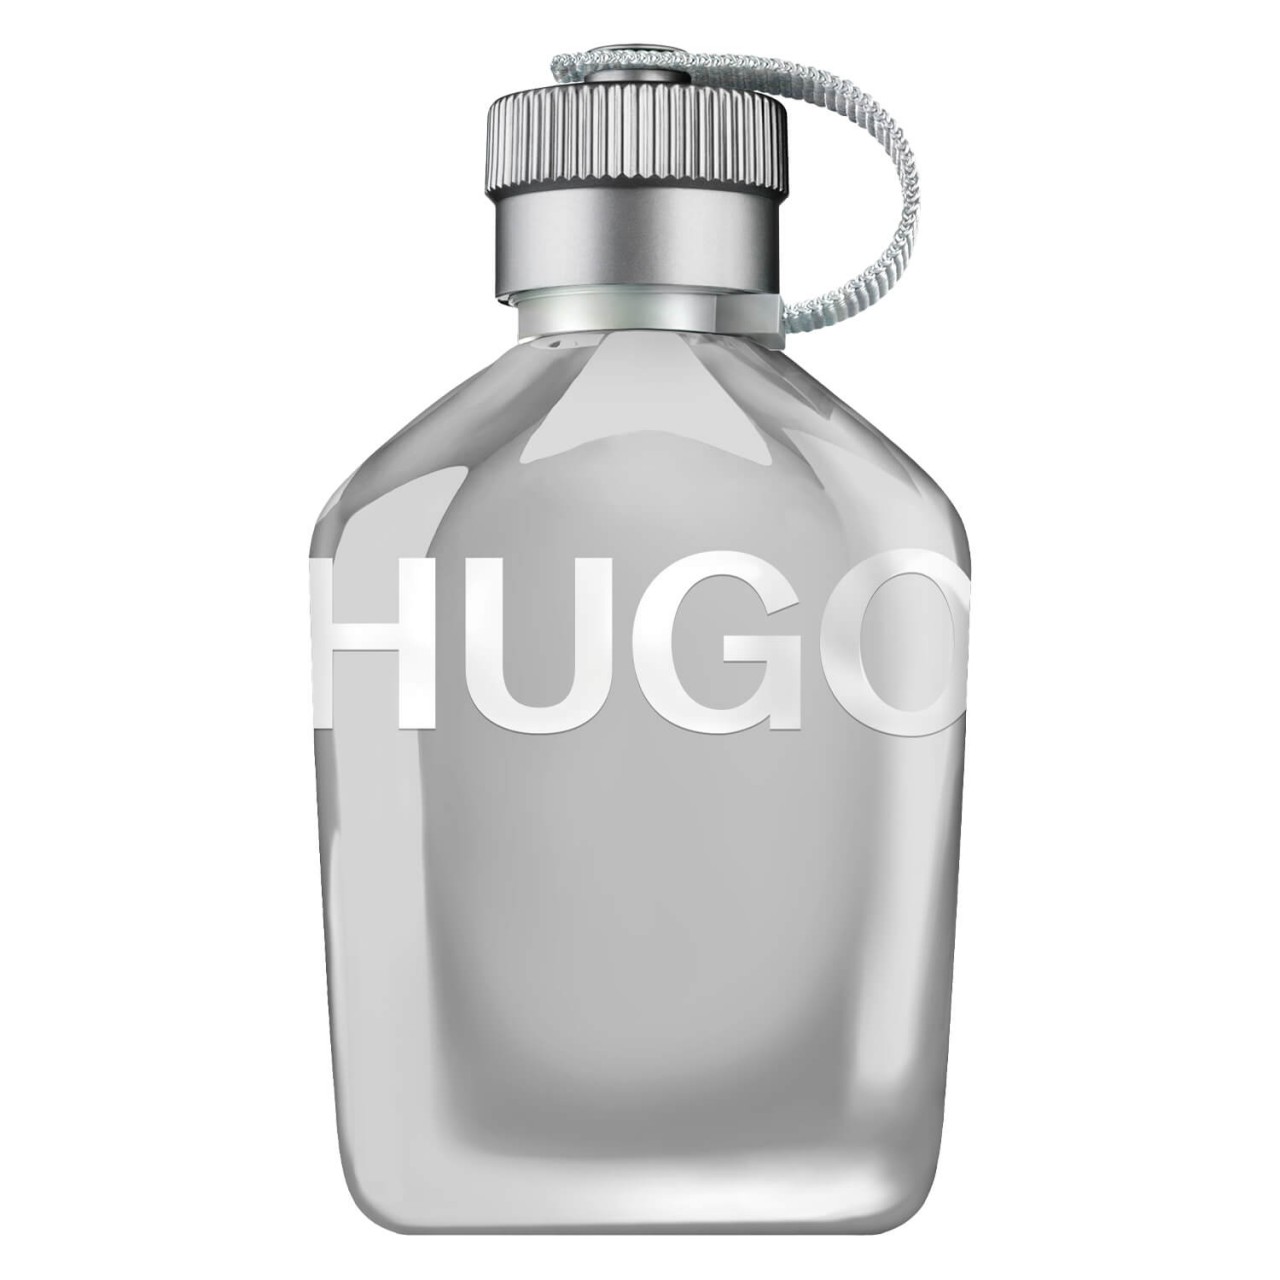 Hugo - Reflective Edition Eau de Toilette For Him von Hugo Boss